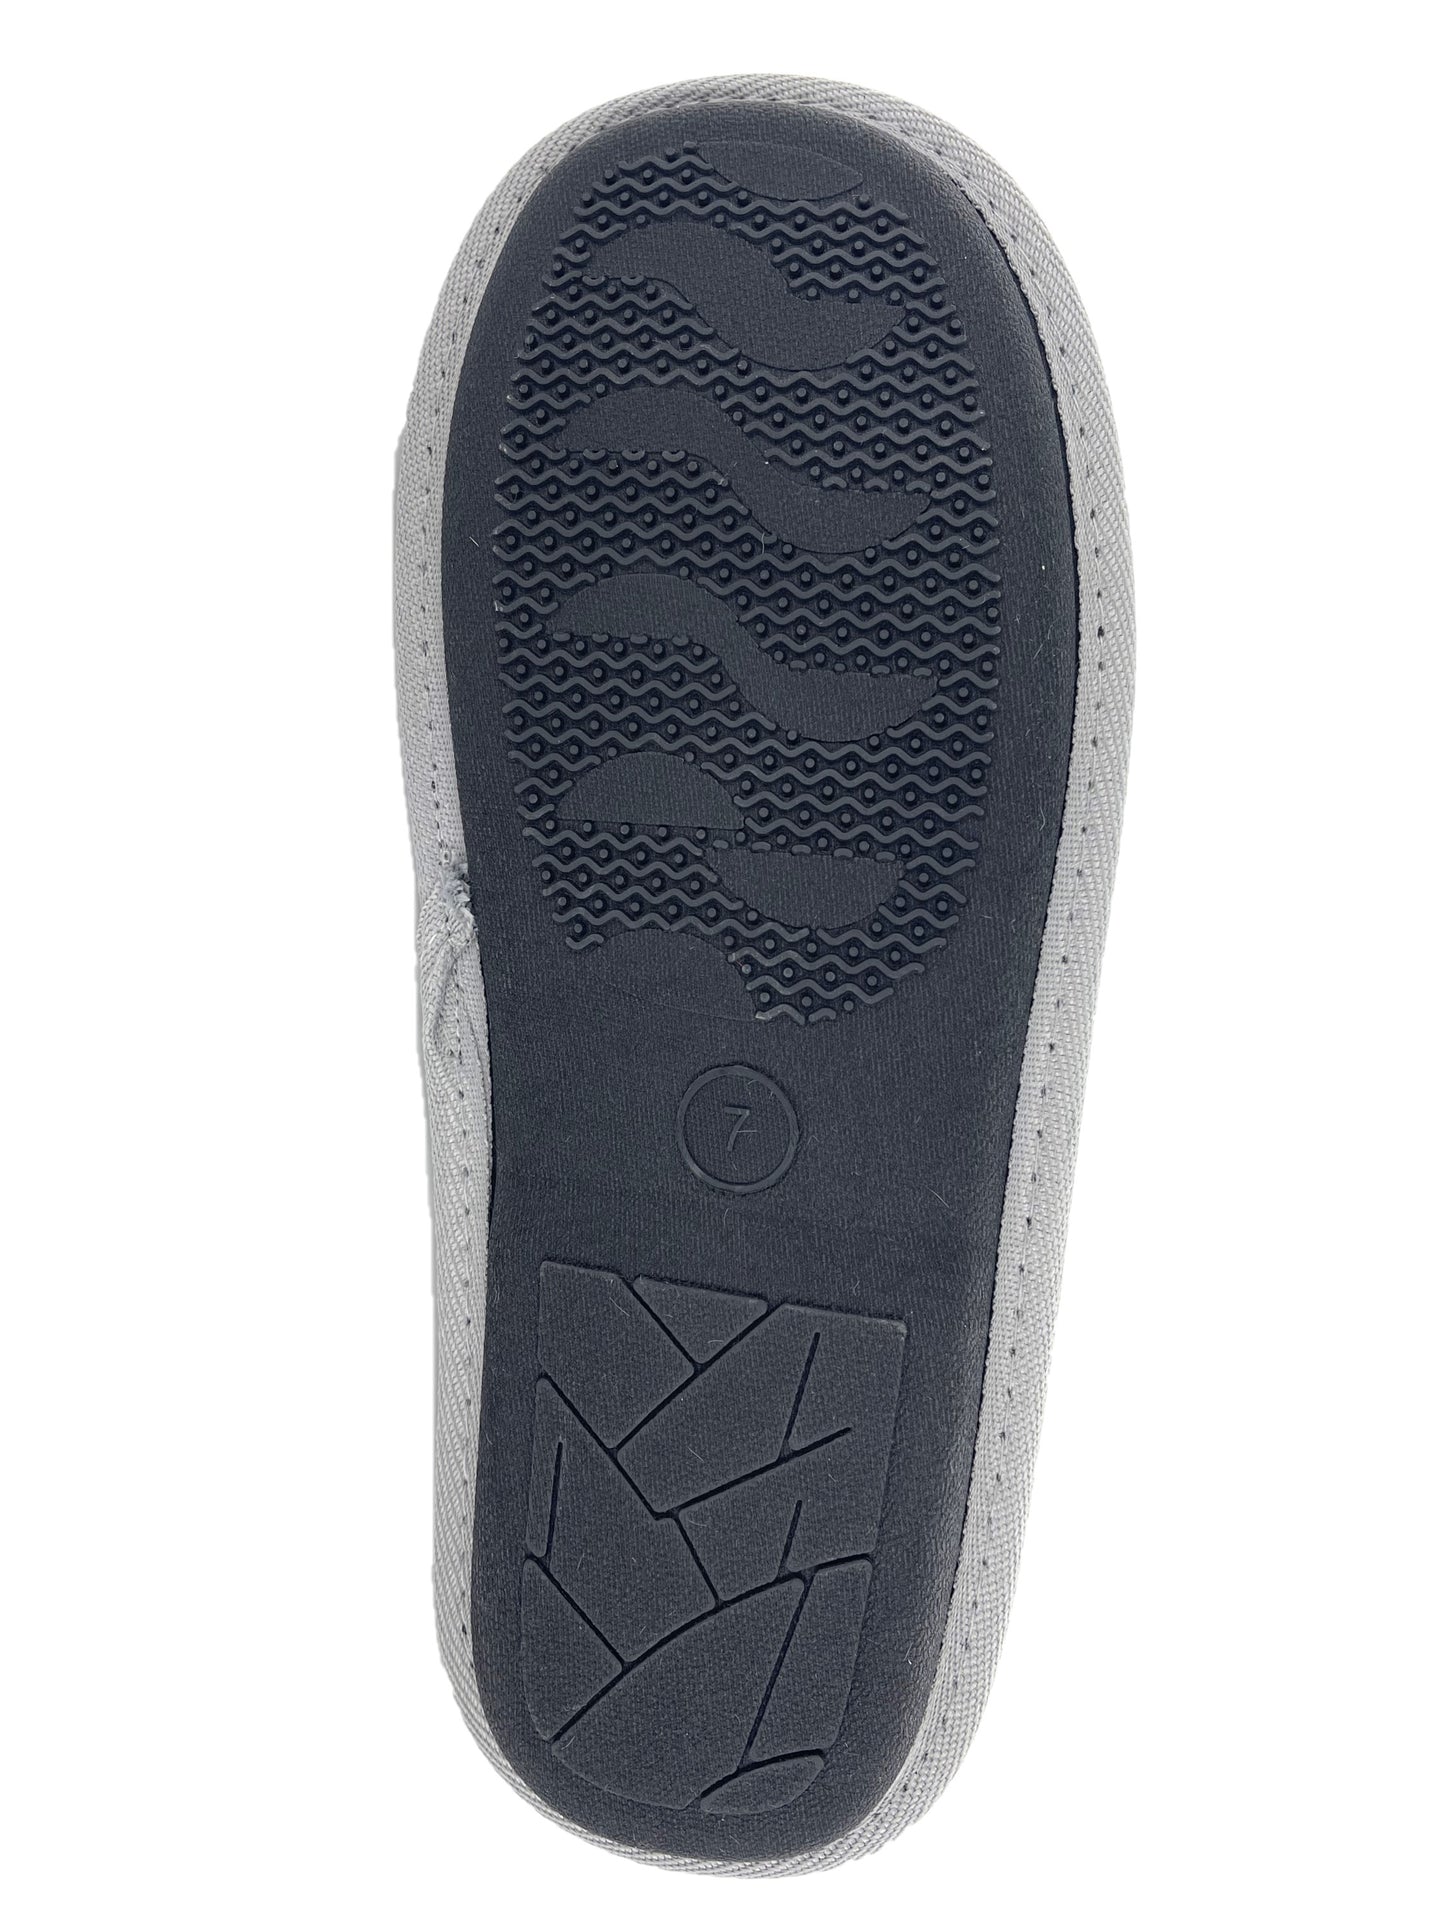 Men's Microfibre Slip-On Faux Fur Lined Memory Foam Mule Slippers